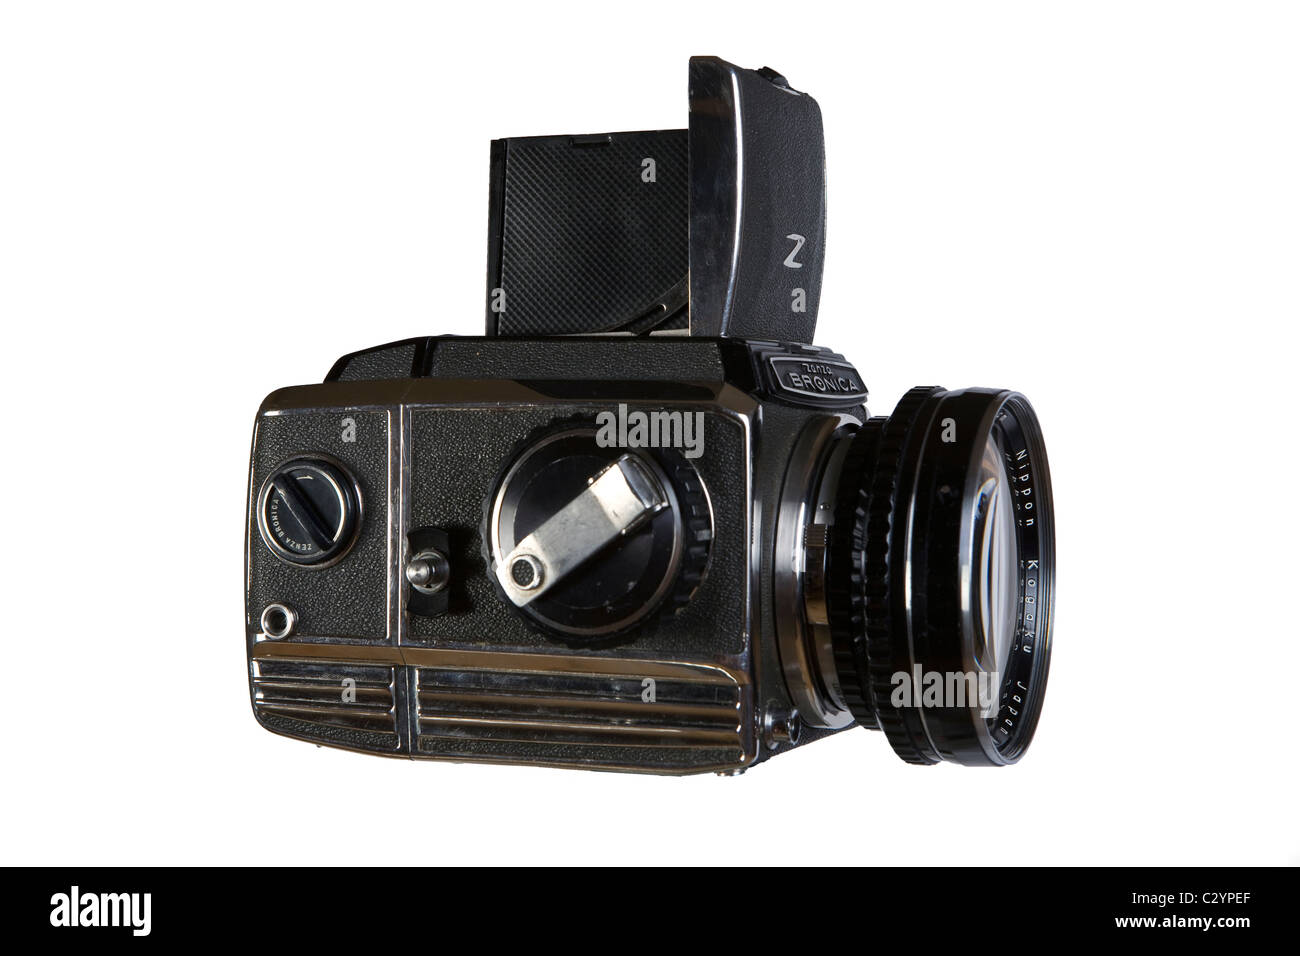 Alte Filmreflex 6x6 Mittelformat Fotokamera Zenza Bronica, Fotokamera auf weißem Hintergrund Stockfoto